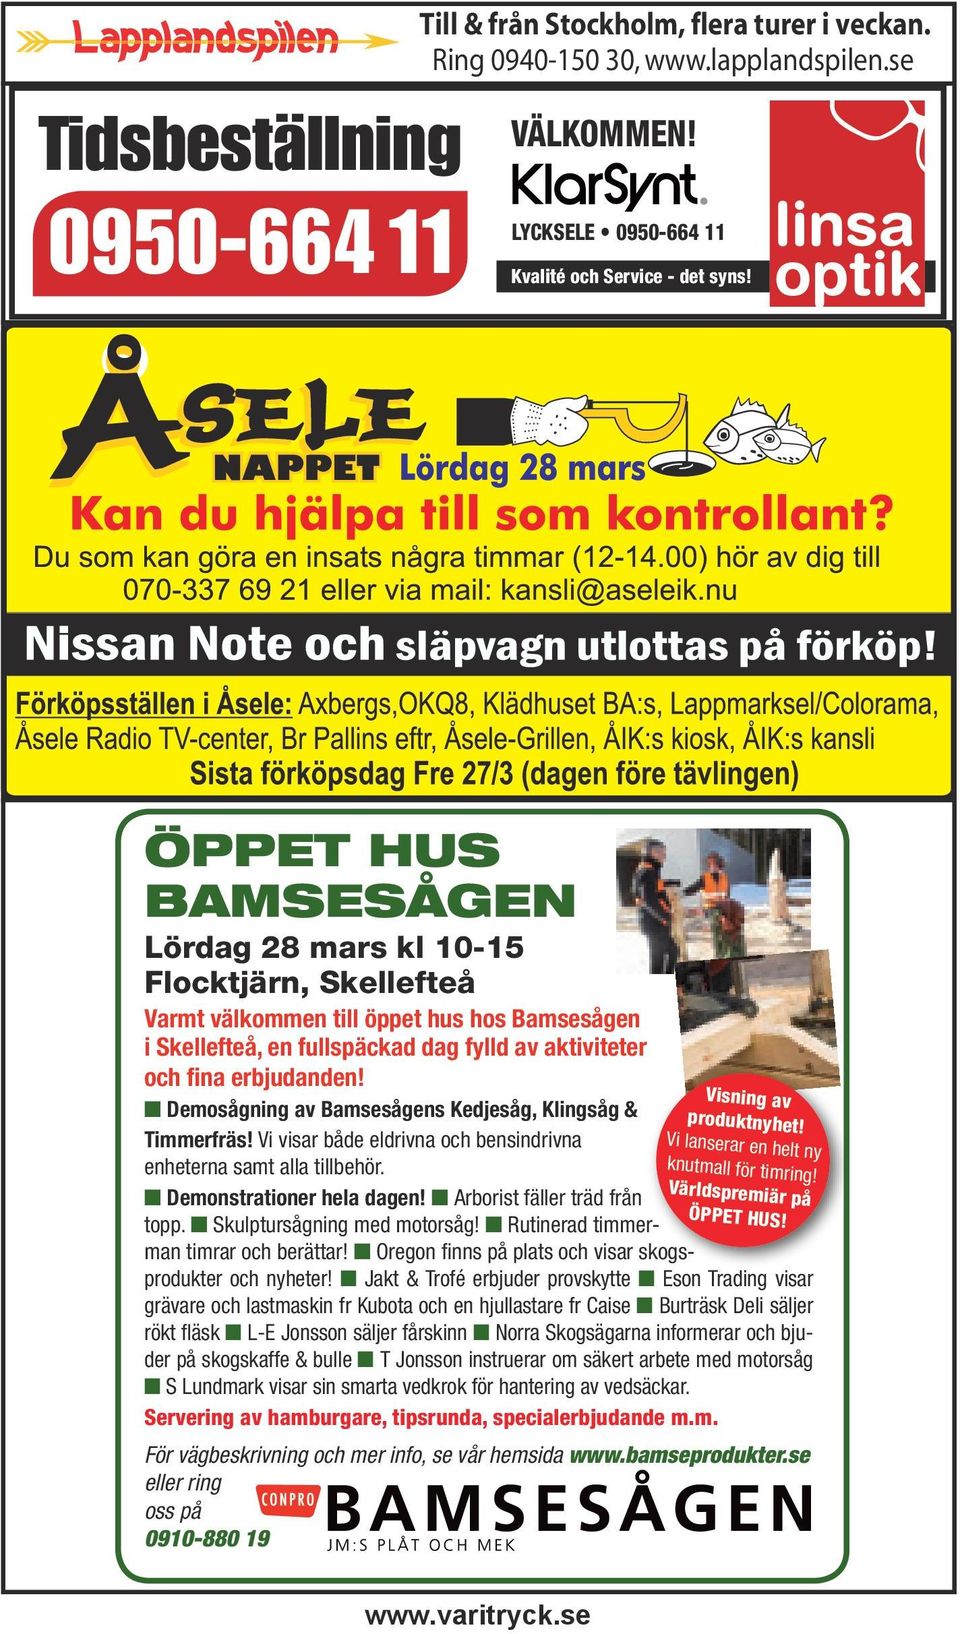 Demosågning av Bamsesågens Kedjesåg, Klingsåg & Timmerfräs! Vi visar både eldrivna och bensindrivna enheterna samt alla tillbehör. Demonstrationer hela dagen! Arborist fäller träd från topp.